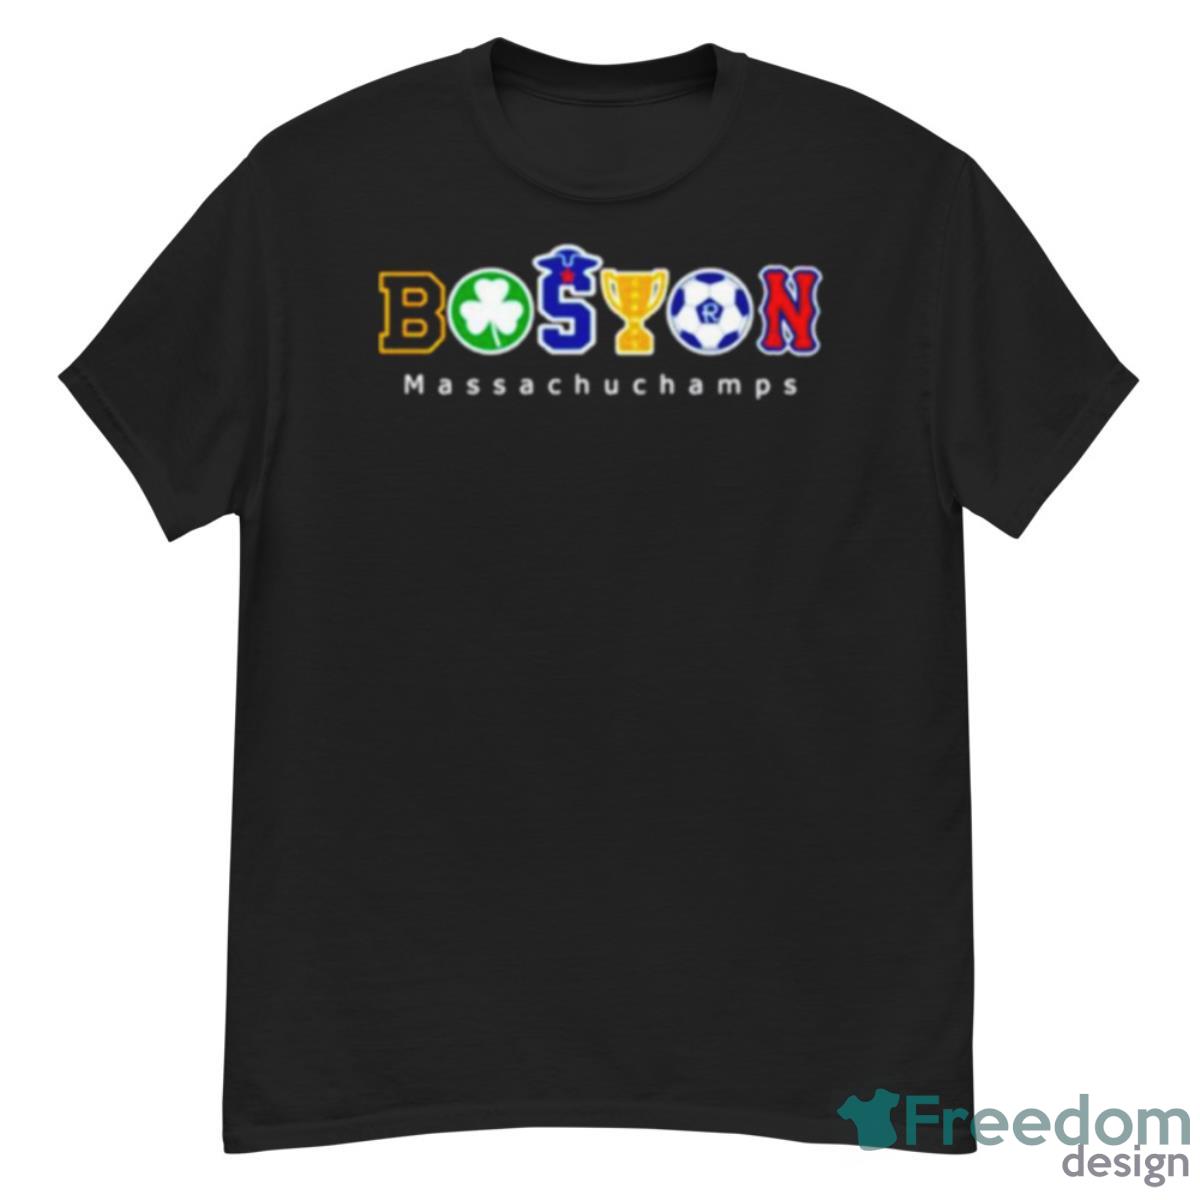 Boston Massachuchamps Shirt - G500 Men’s Classic T-Shirt